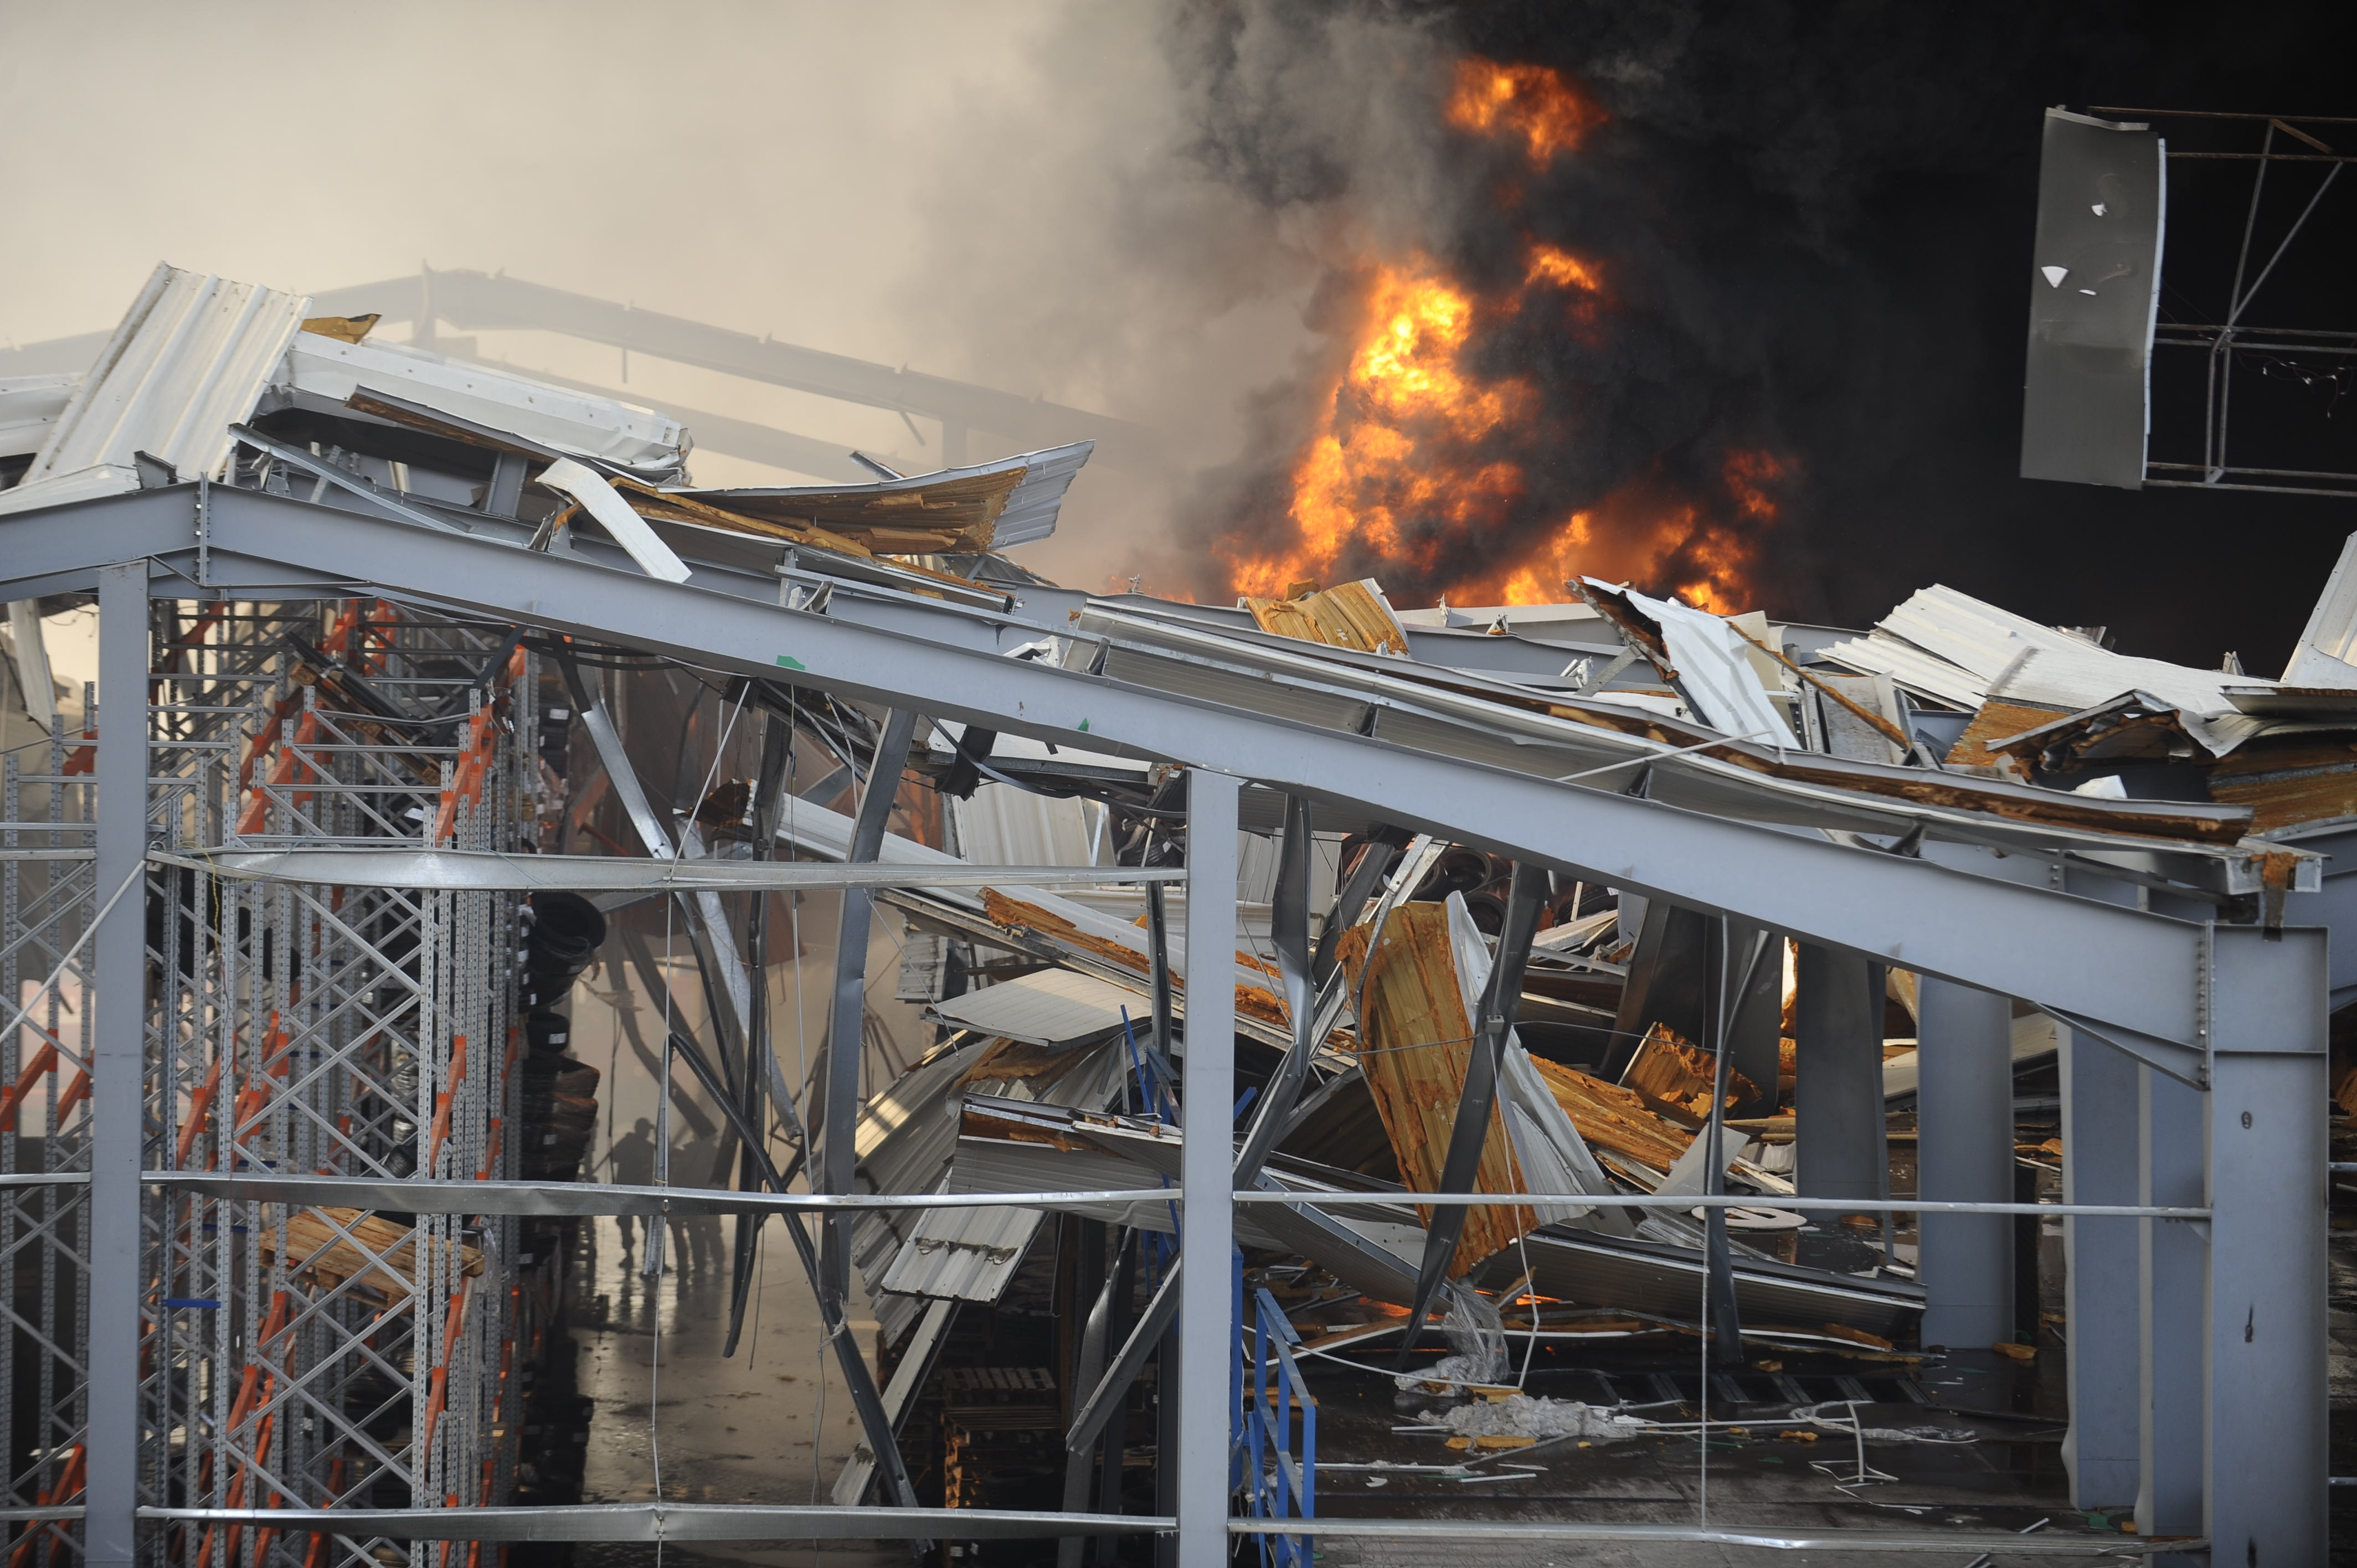 9月10日，在黎巴嫩首都貝魯特，一名外賣快遞員準備用手機拍攝港口區一處倉庫起火後產生的濃煙。 黎巴嫩首都貝魯特港口區一處倉庫10日發生火災，暫時沒有人員傷亡報告。據當地媒體報道，火災發生在當地時間13時30分左右。黎軍方在社交媒體推特上發表聲明說，起火地點為港口免稅區內存放輪胎和油料的倉庫。 新華社